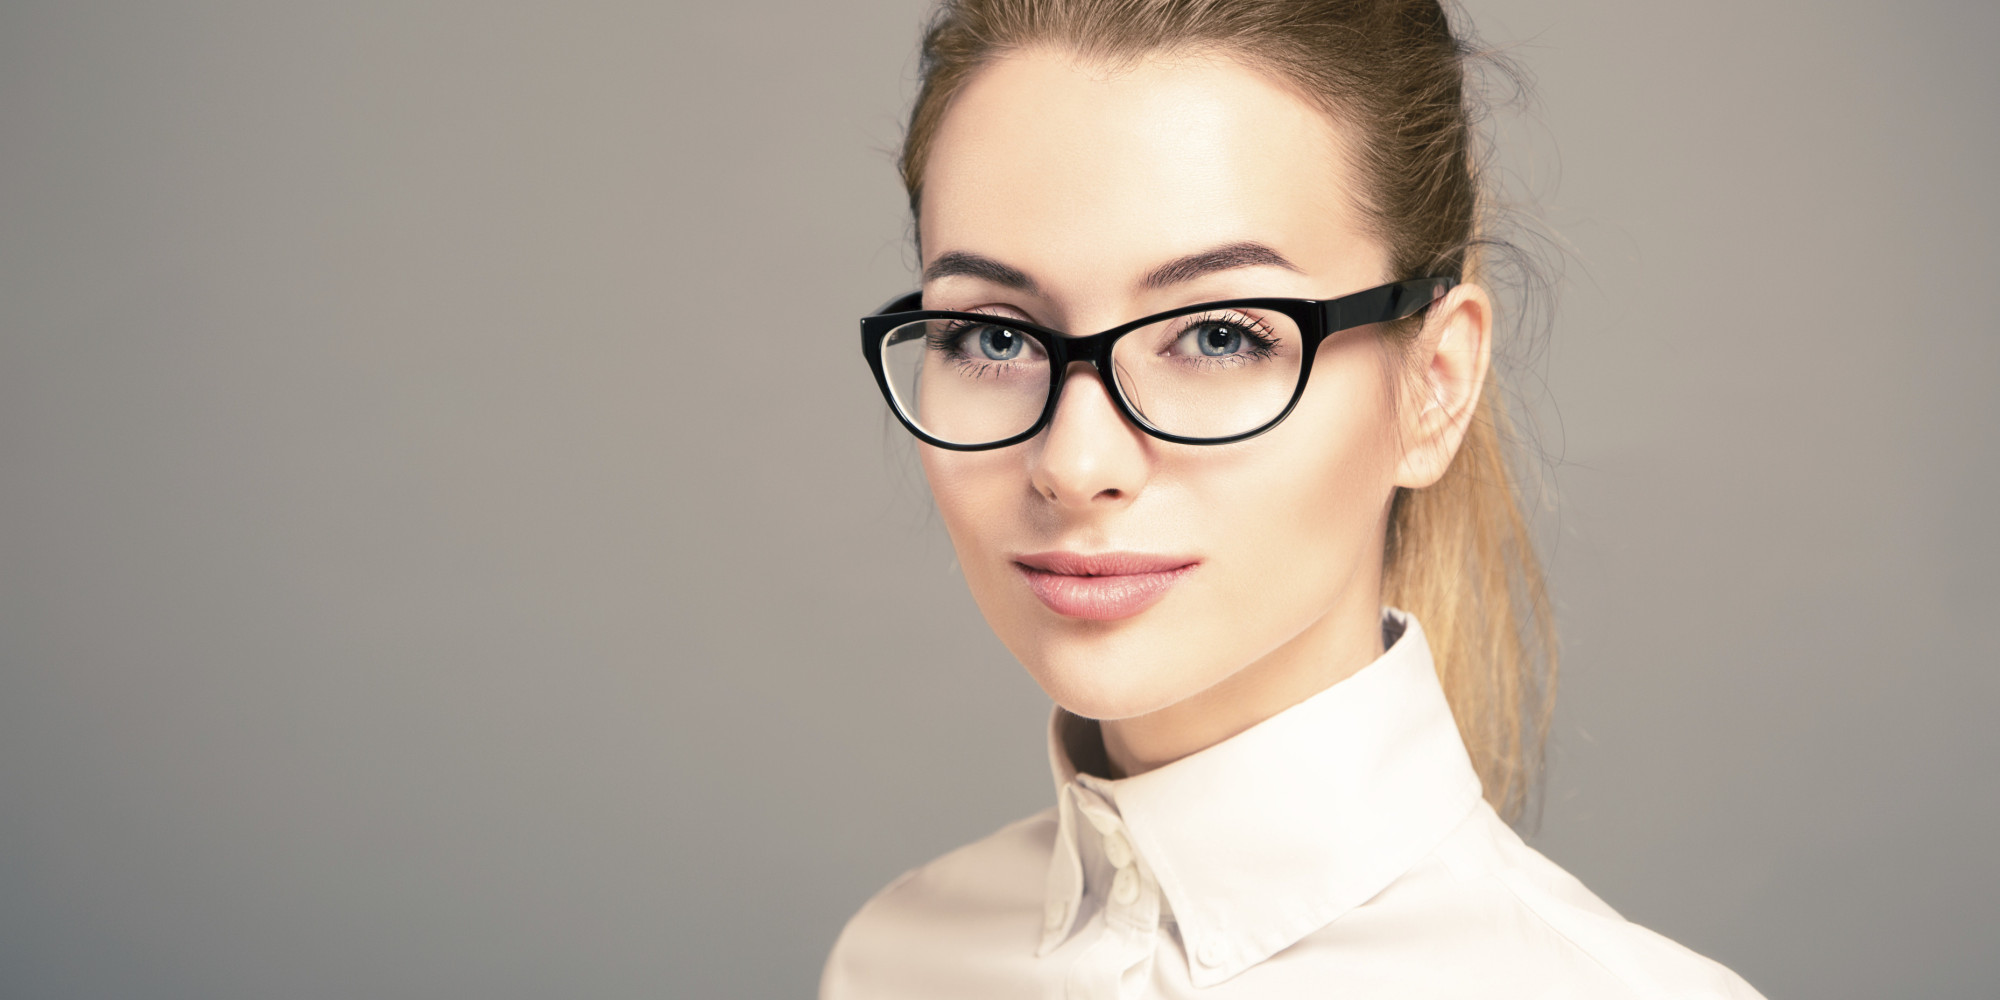 Об очках для женщин в 40 лет